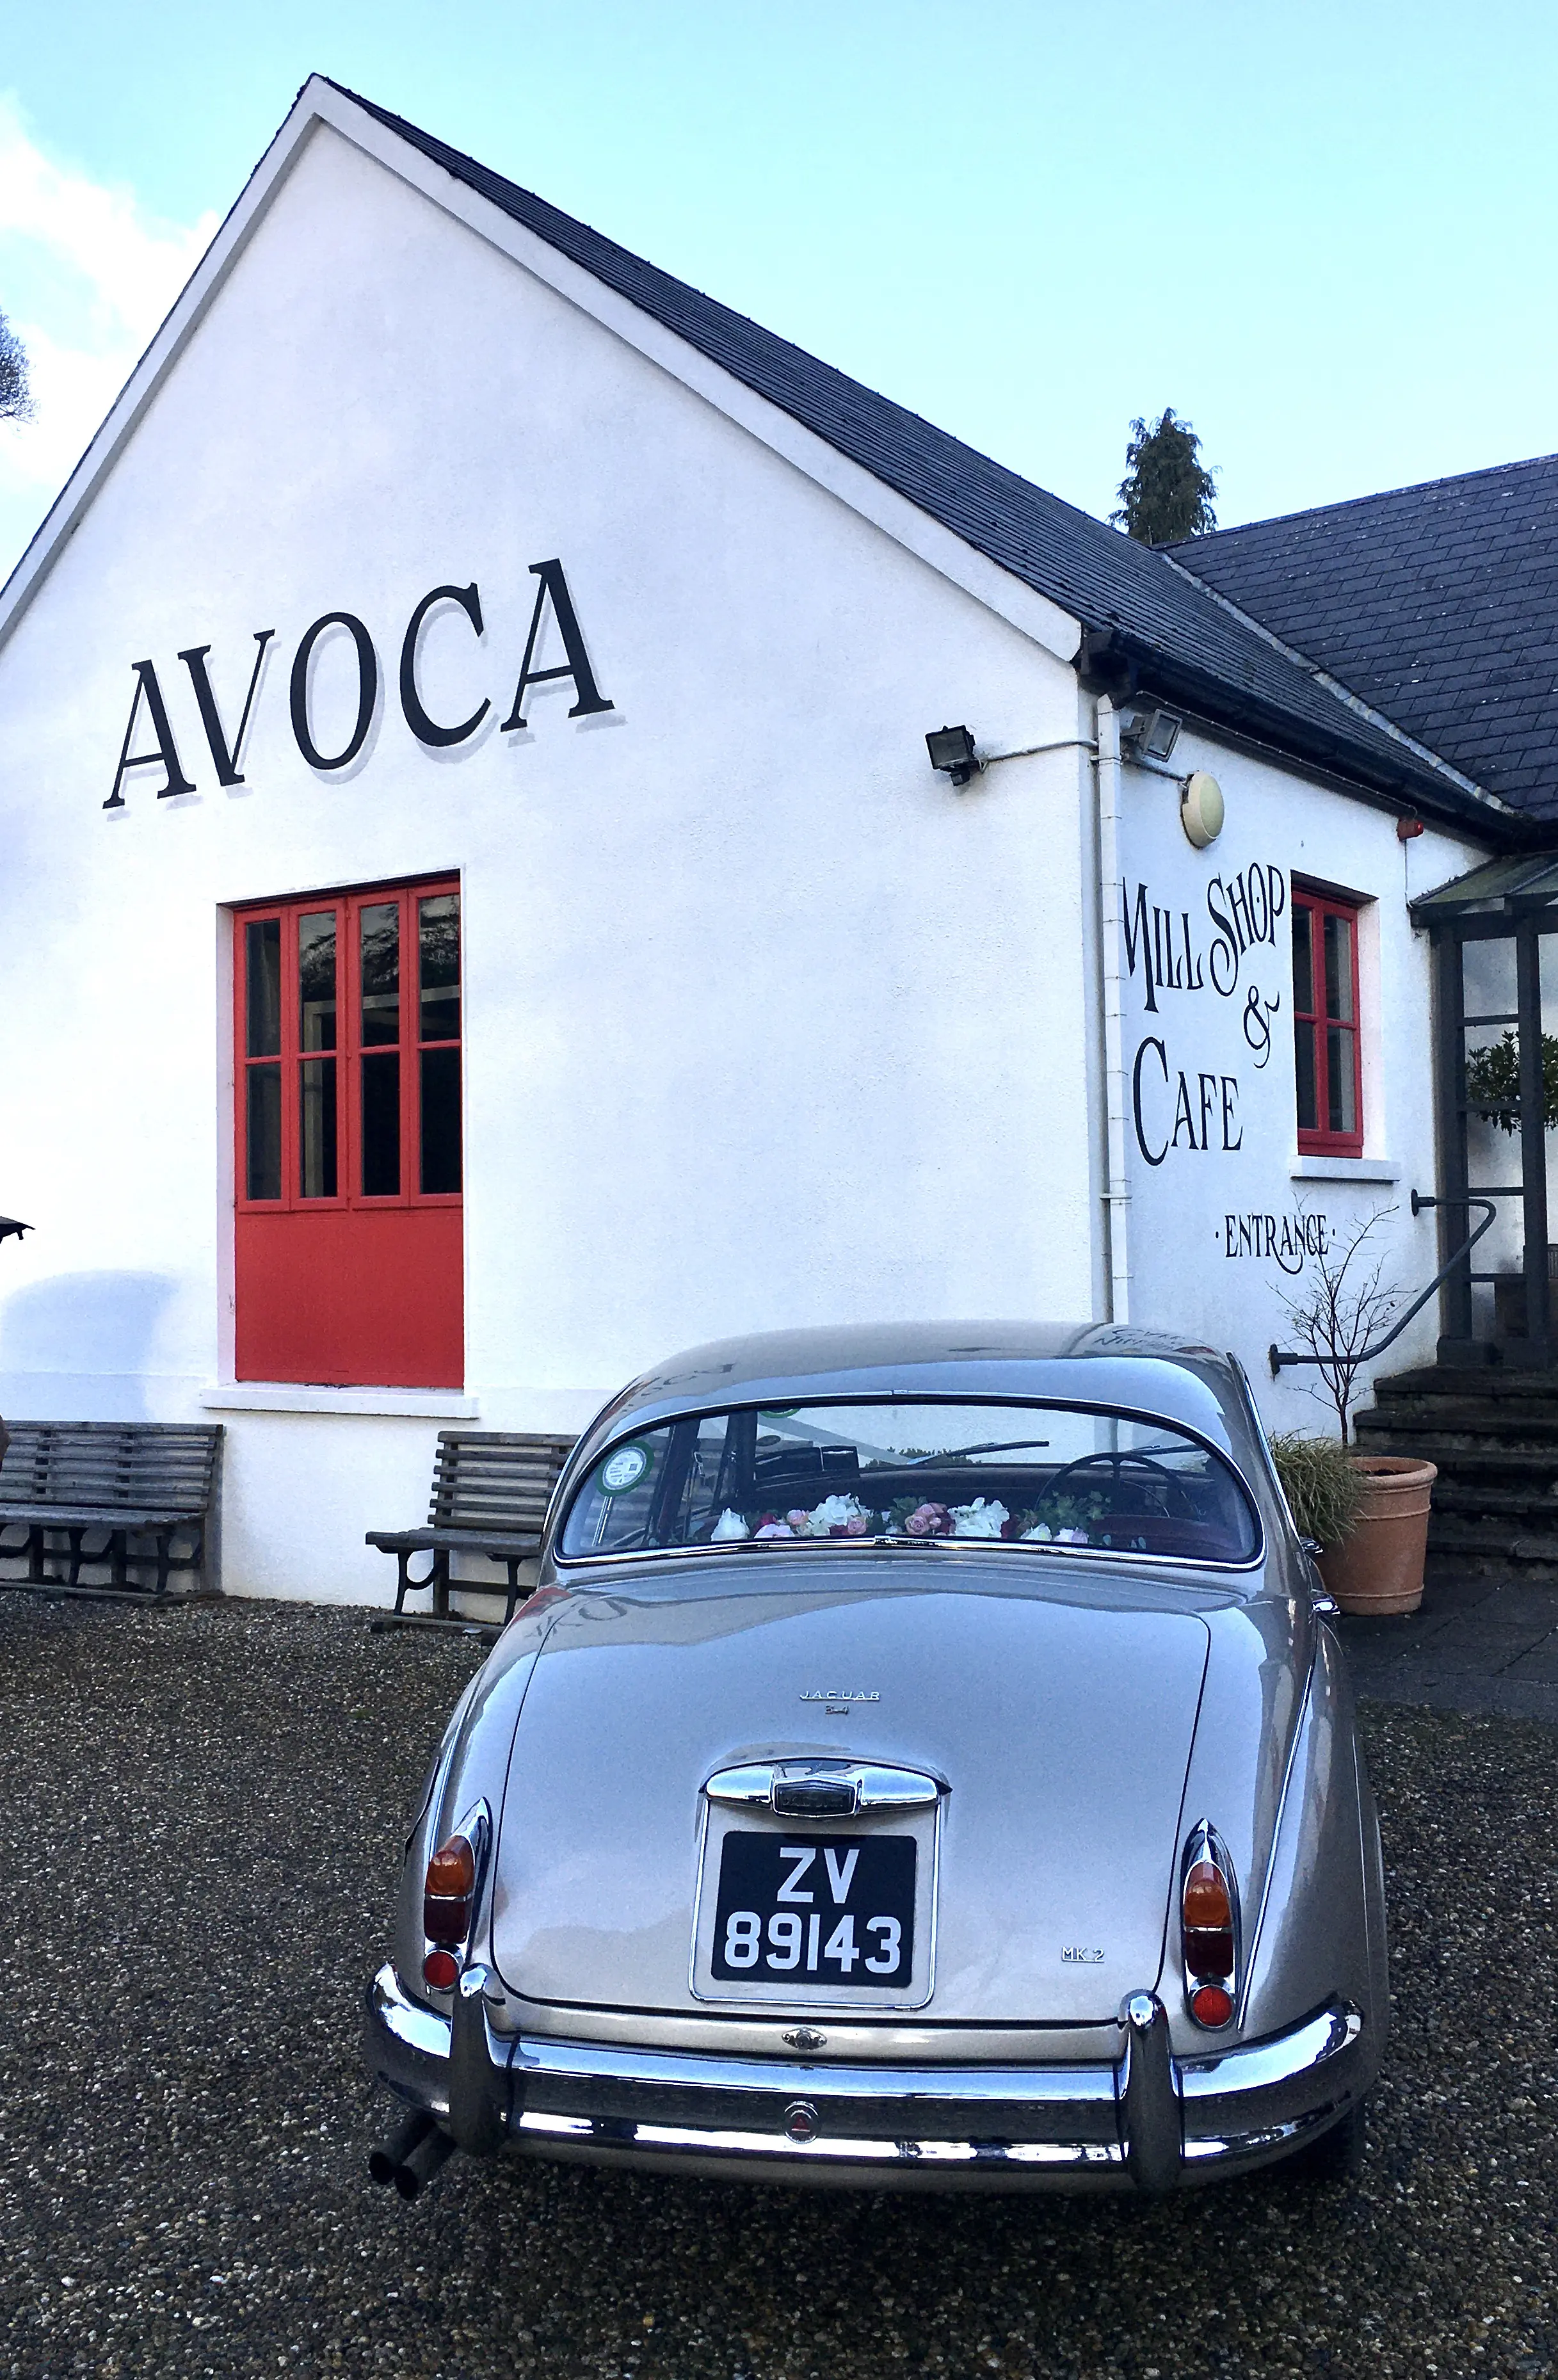 A Classic Jaguar wedding car at Avoca, Wicklow 